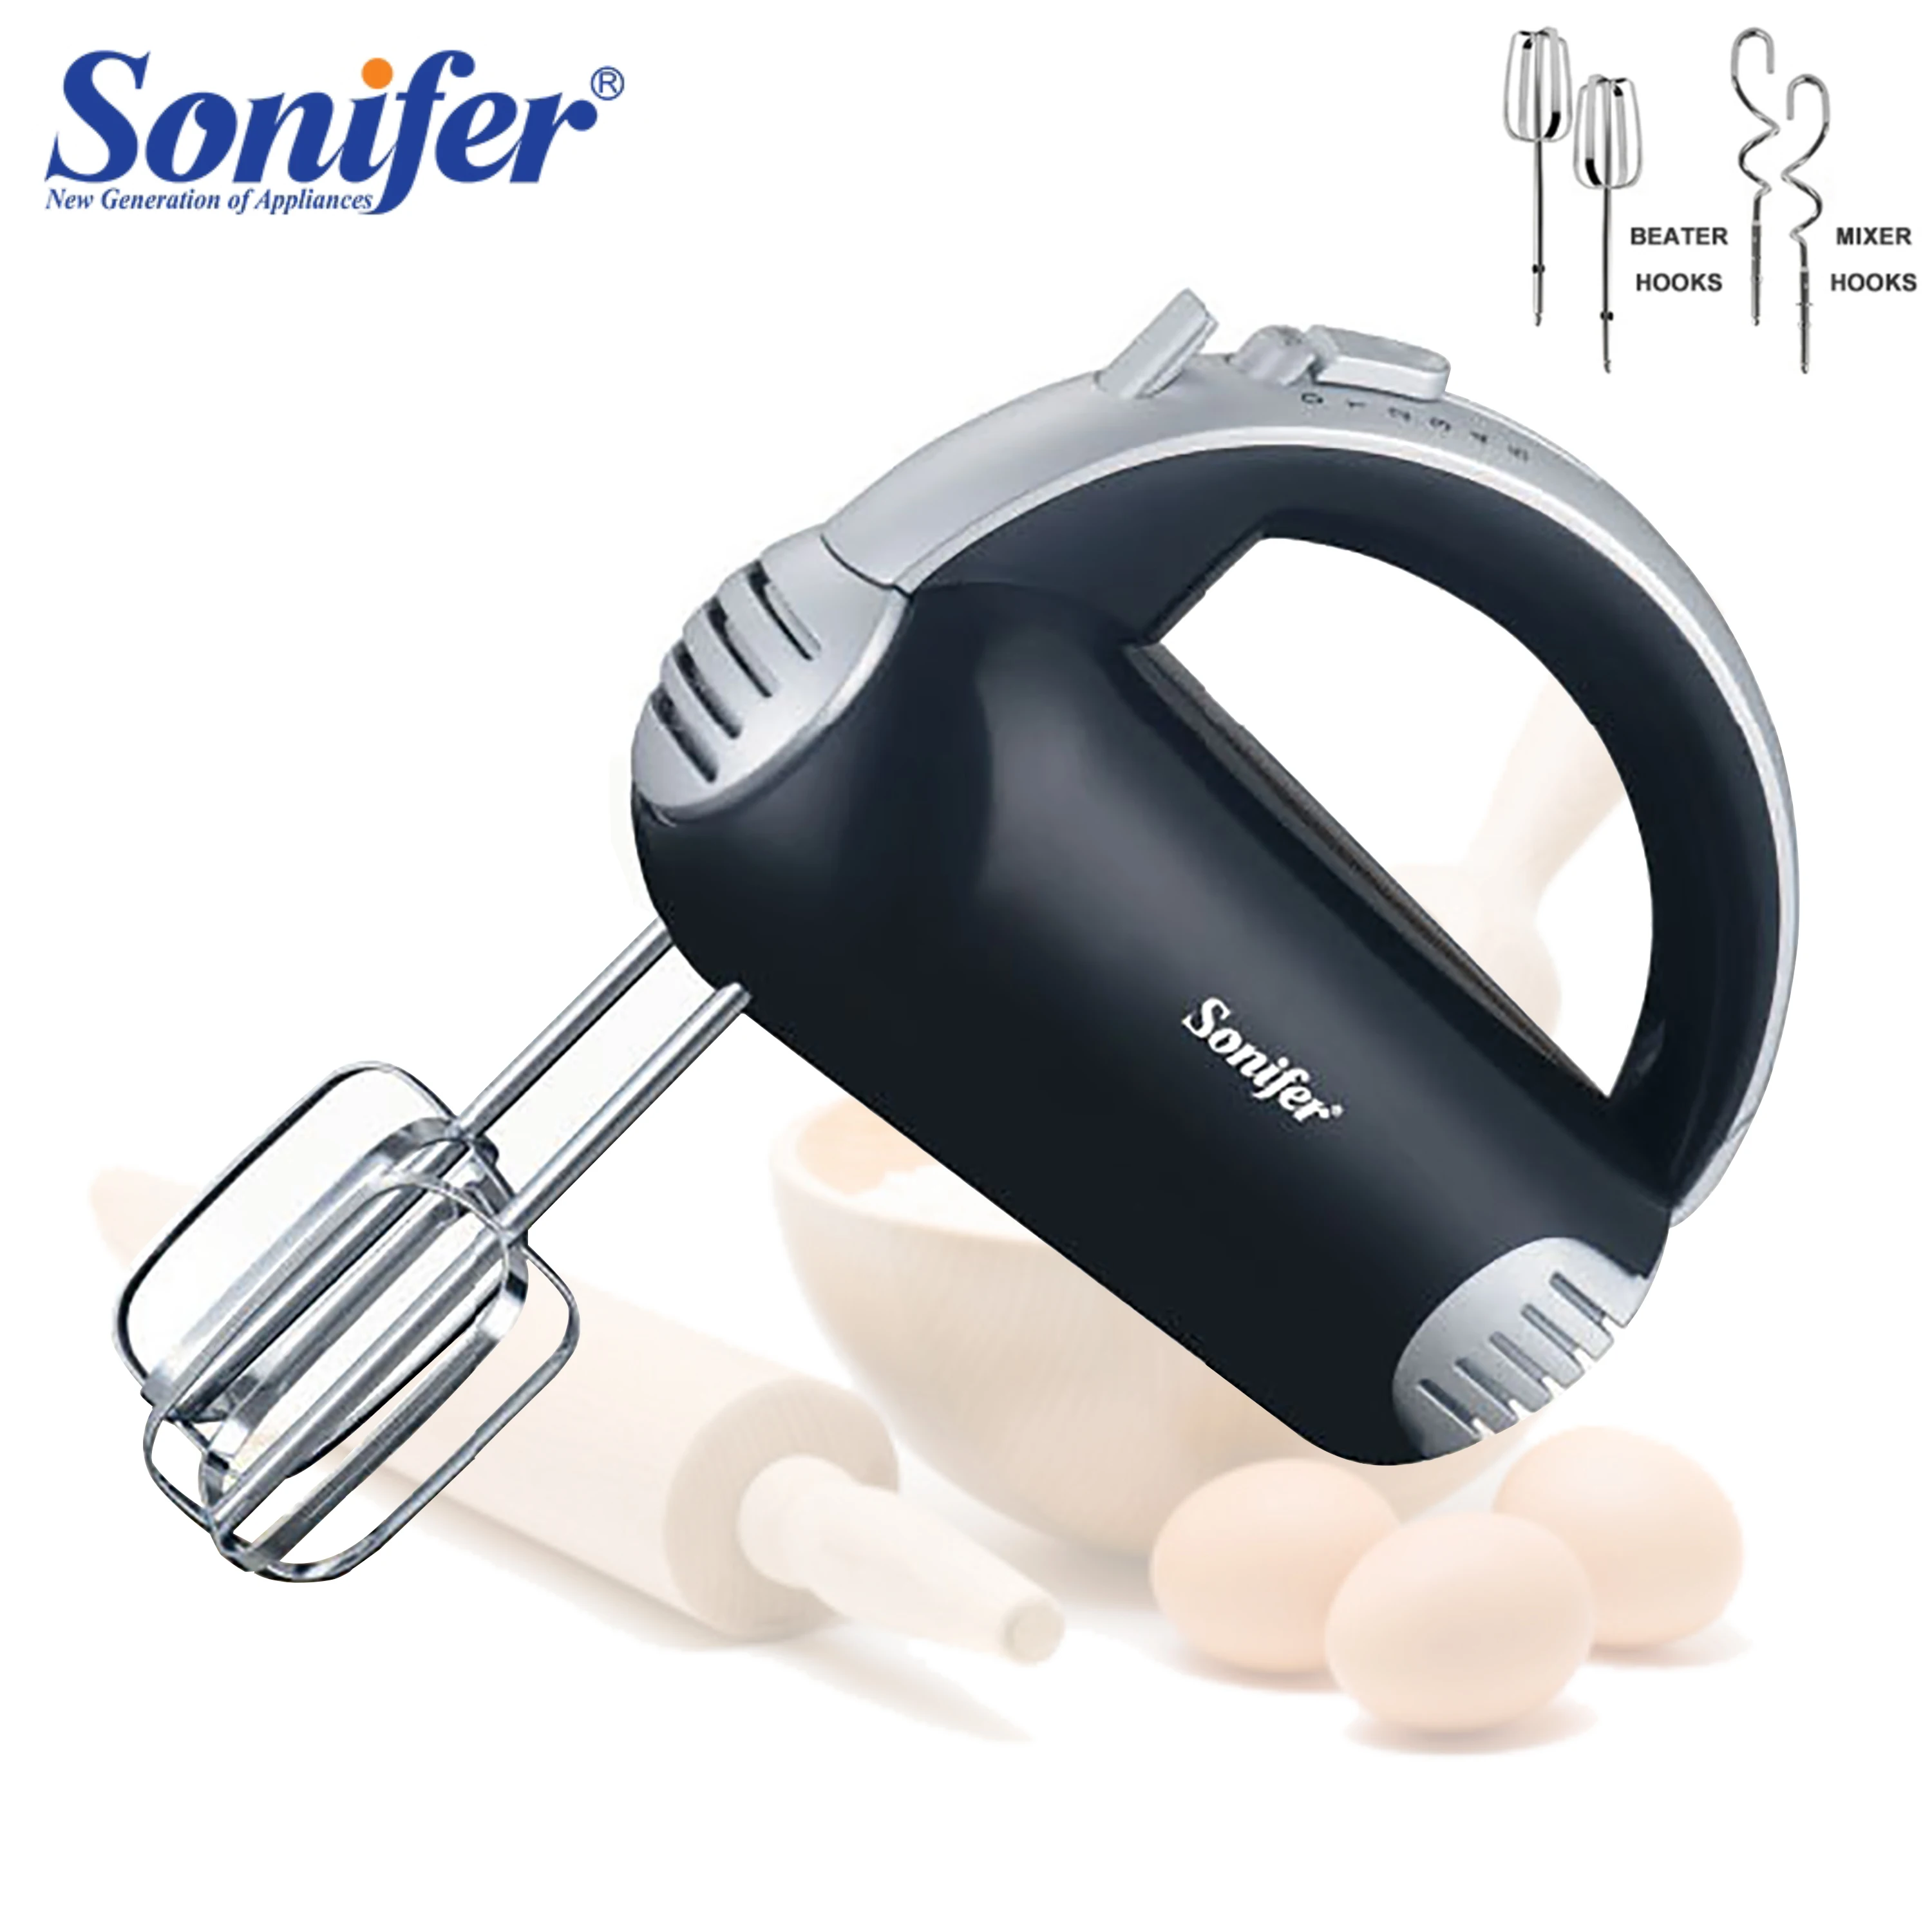 

Кухонный миксер Sonifer, электрический кухонный Блендер с крючками для теста, хромированный ручной миксер для сладкой хлебобулочной выпечки SF7013